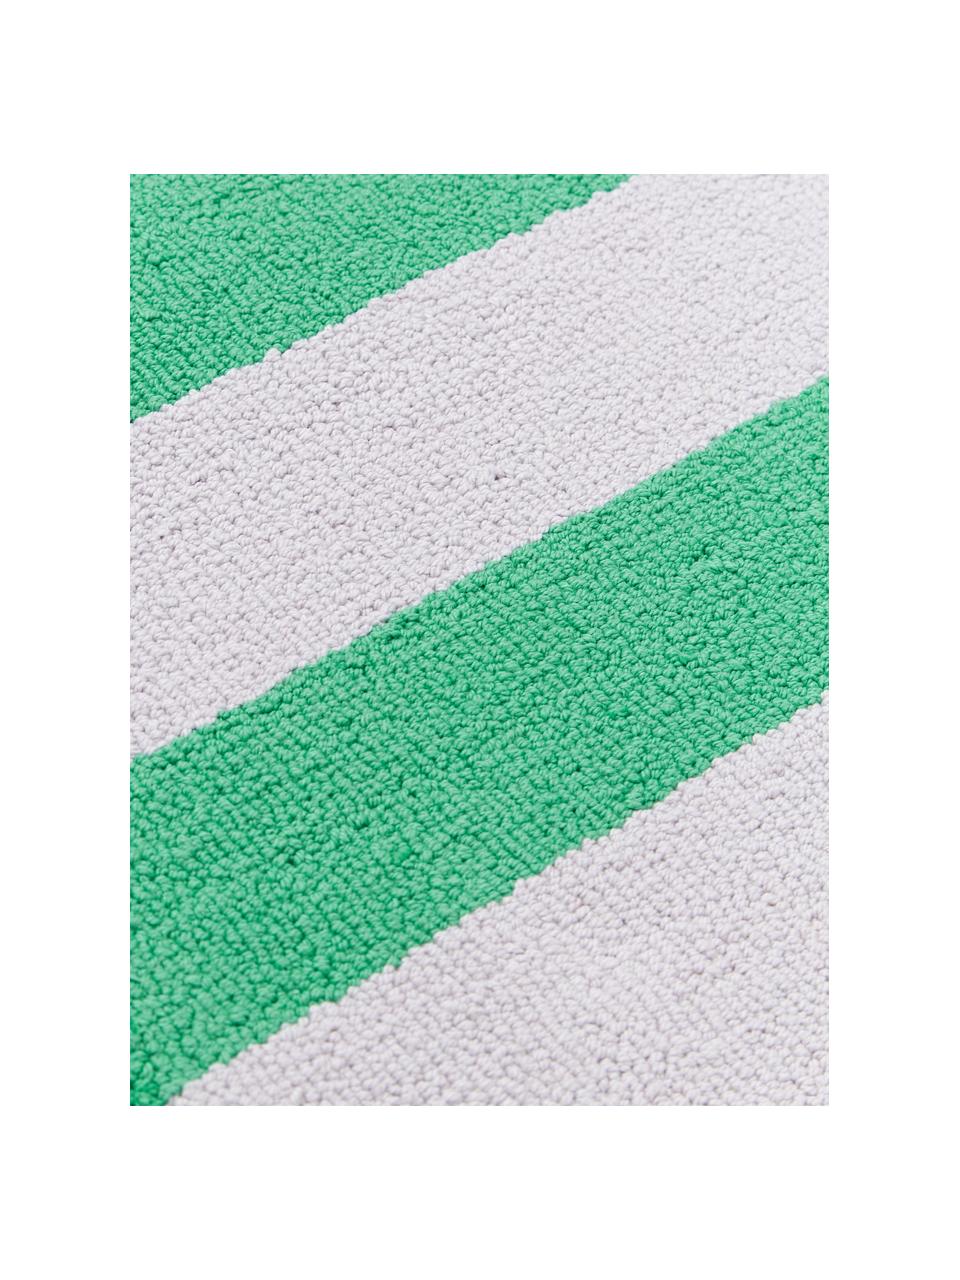 Handgetuftete Tischsets Kio Stripe, 4 Stück, 100 % Baumwolle, Grün, Weiß, B 35 x L 45 cm